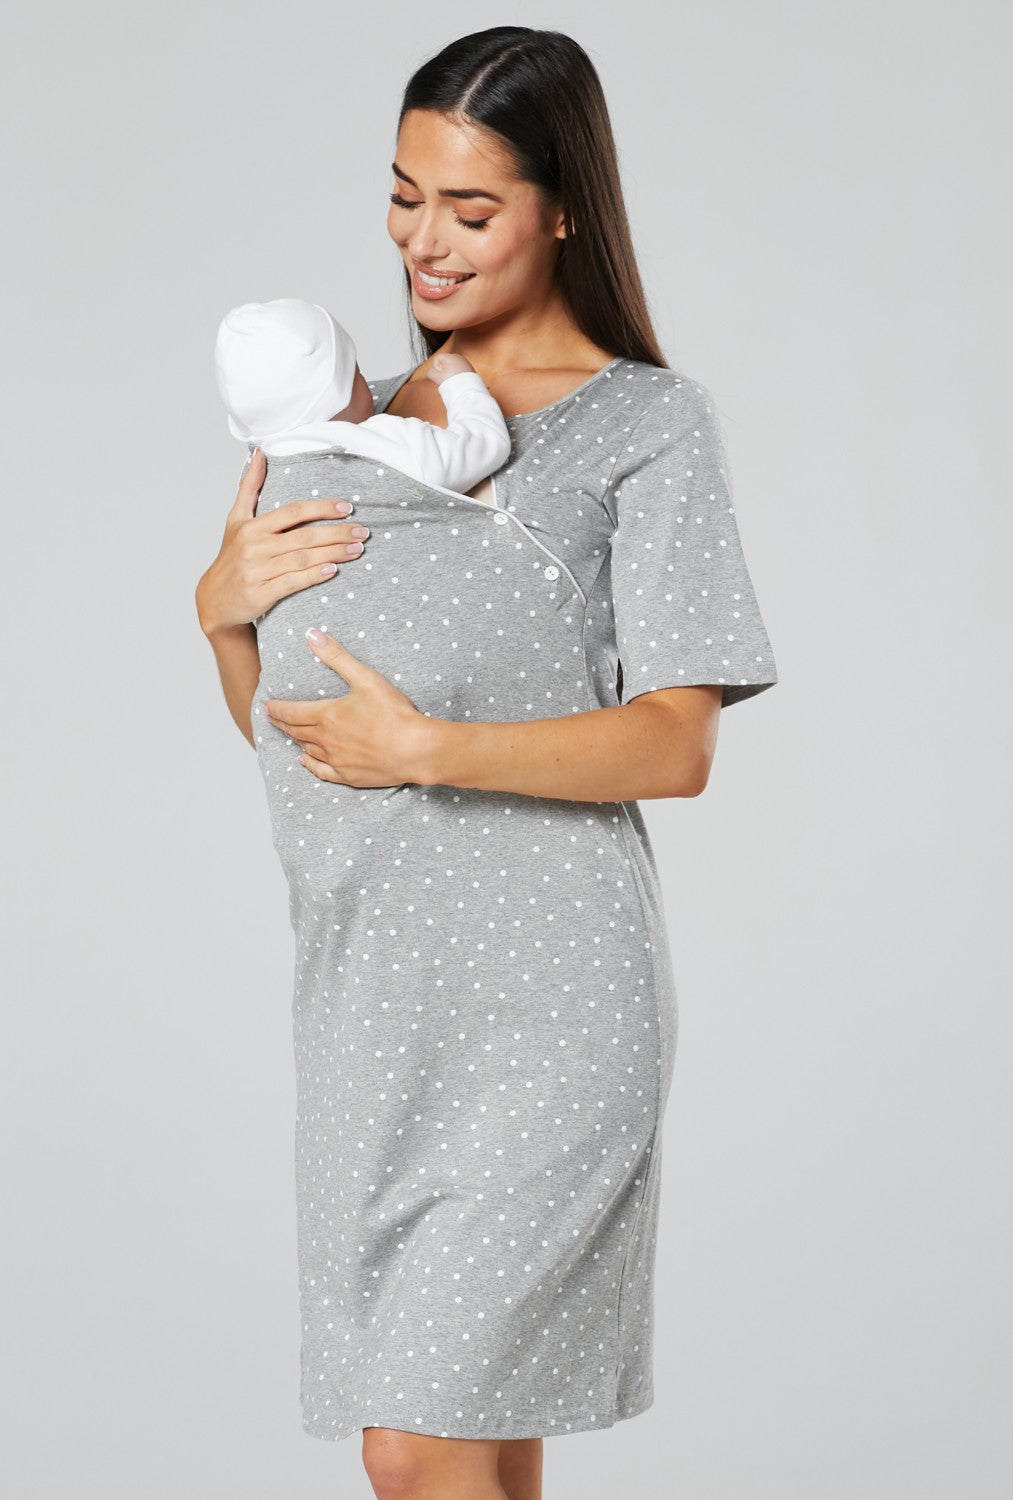 Maternity Matching Nightdress